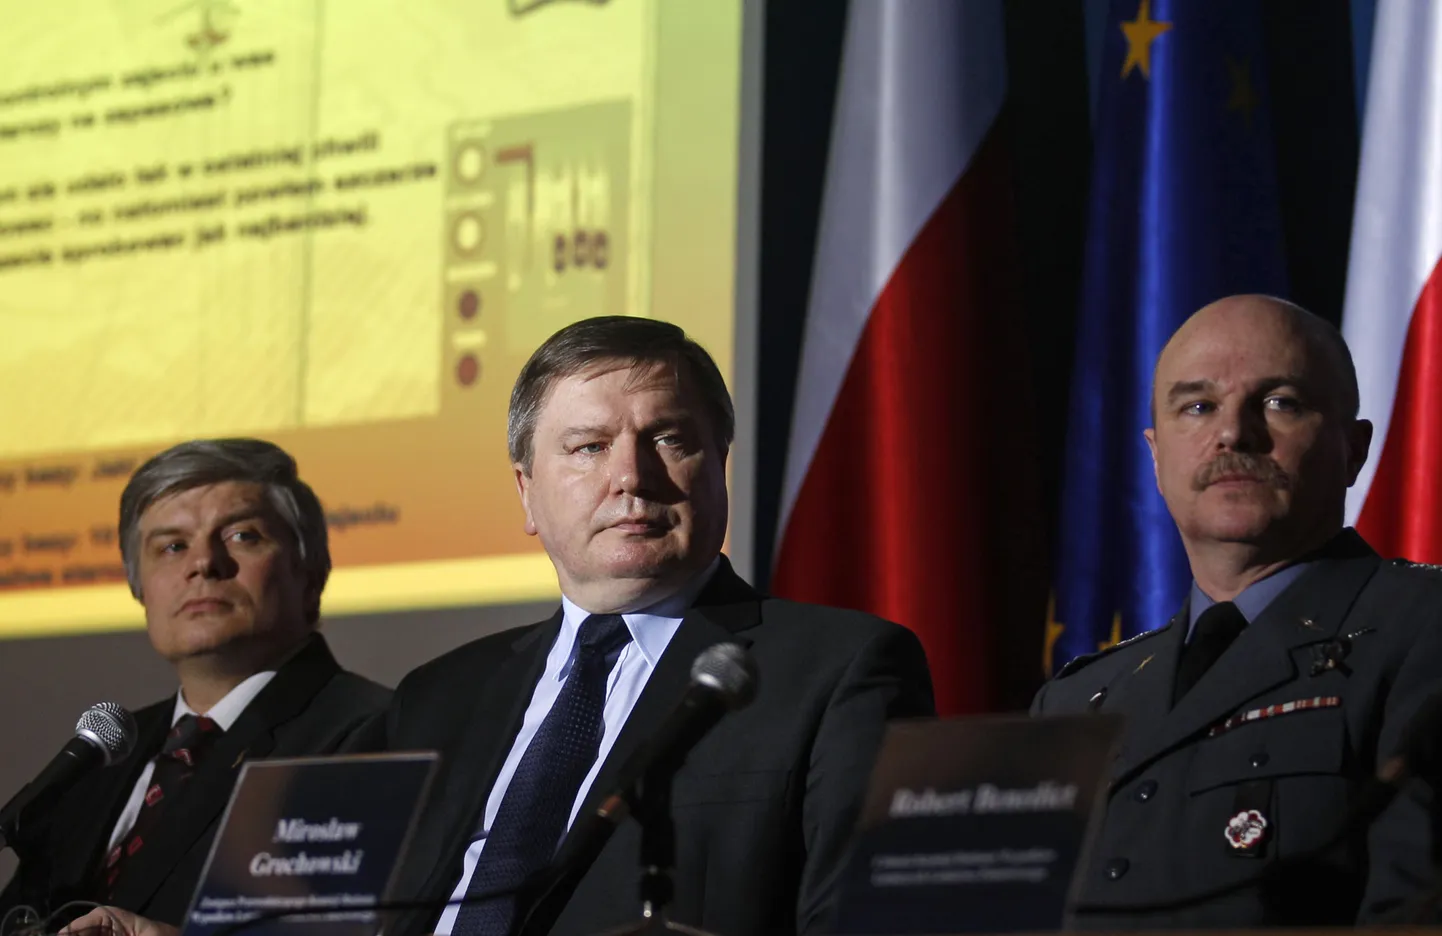 Poola siseminister Jerzy Miller (keskel) ja Smolenski lennuõnnetuse uurijad Miroslaw Grochowski (paremal) ja Maciej Lasek pressikonverentsil Varssavis.